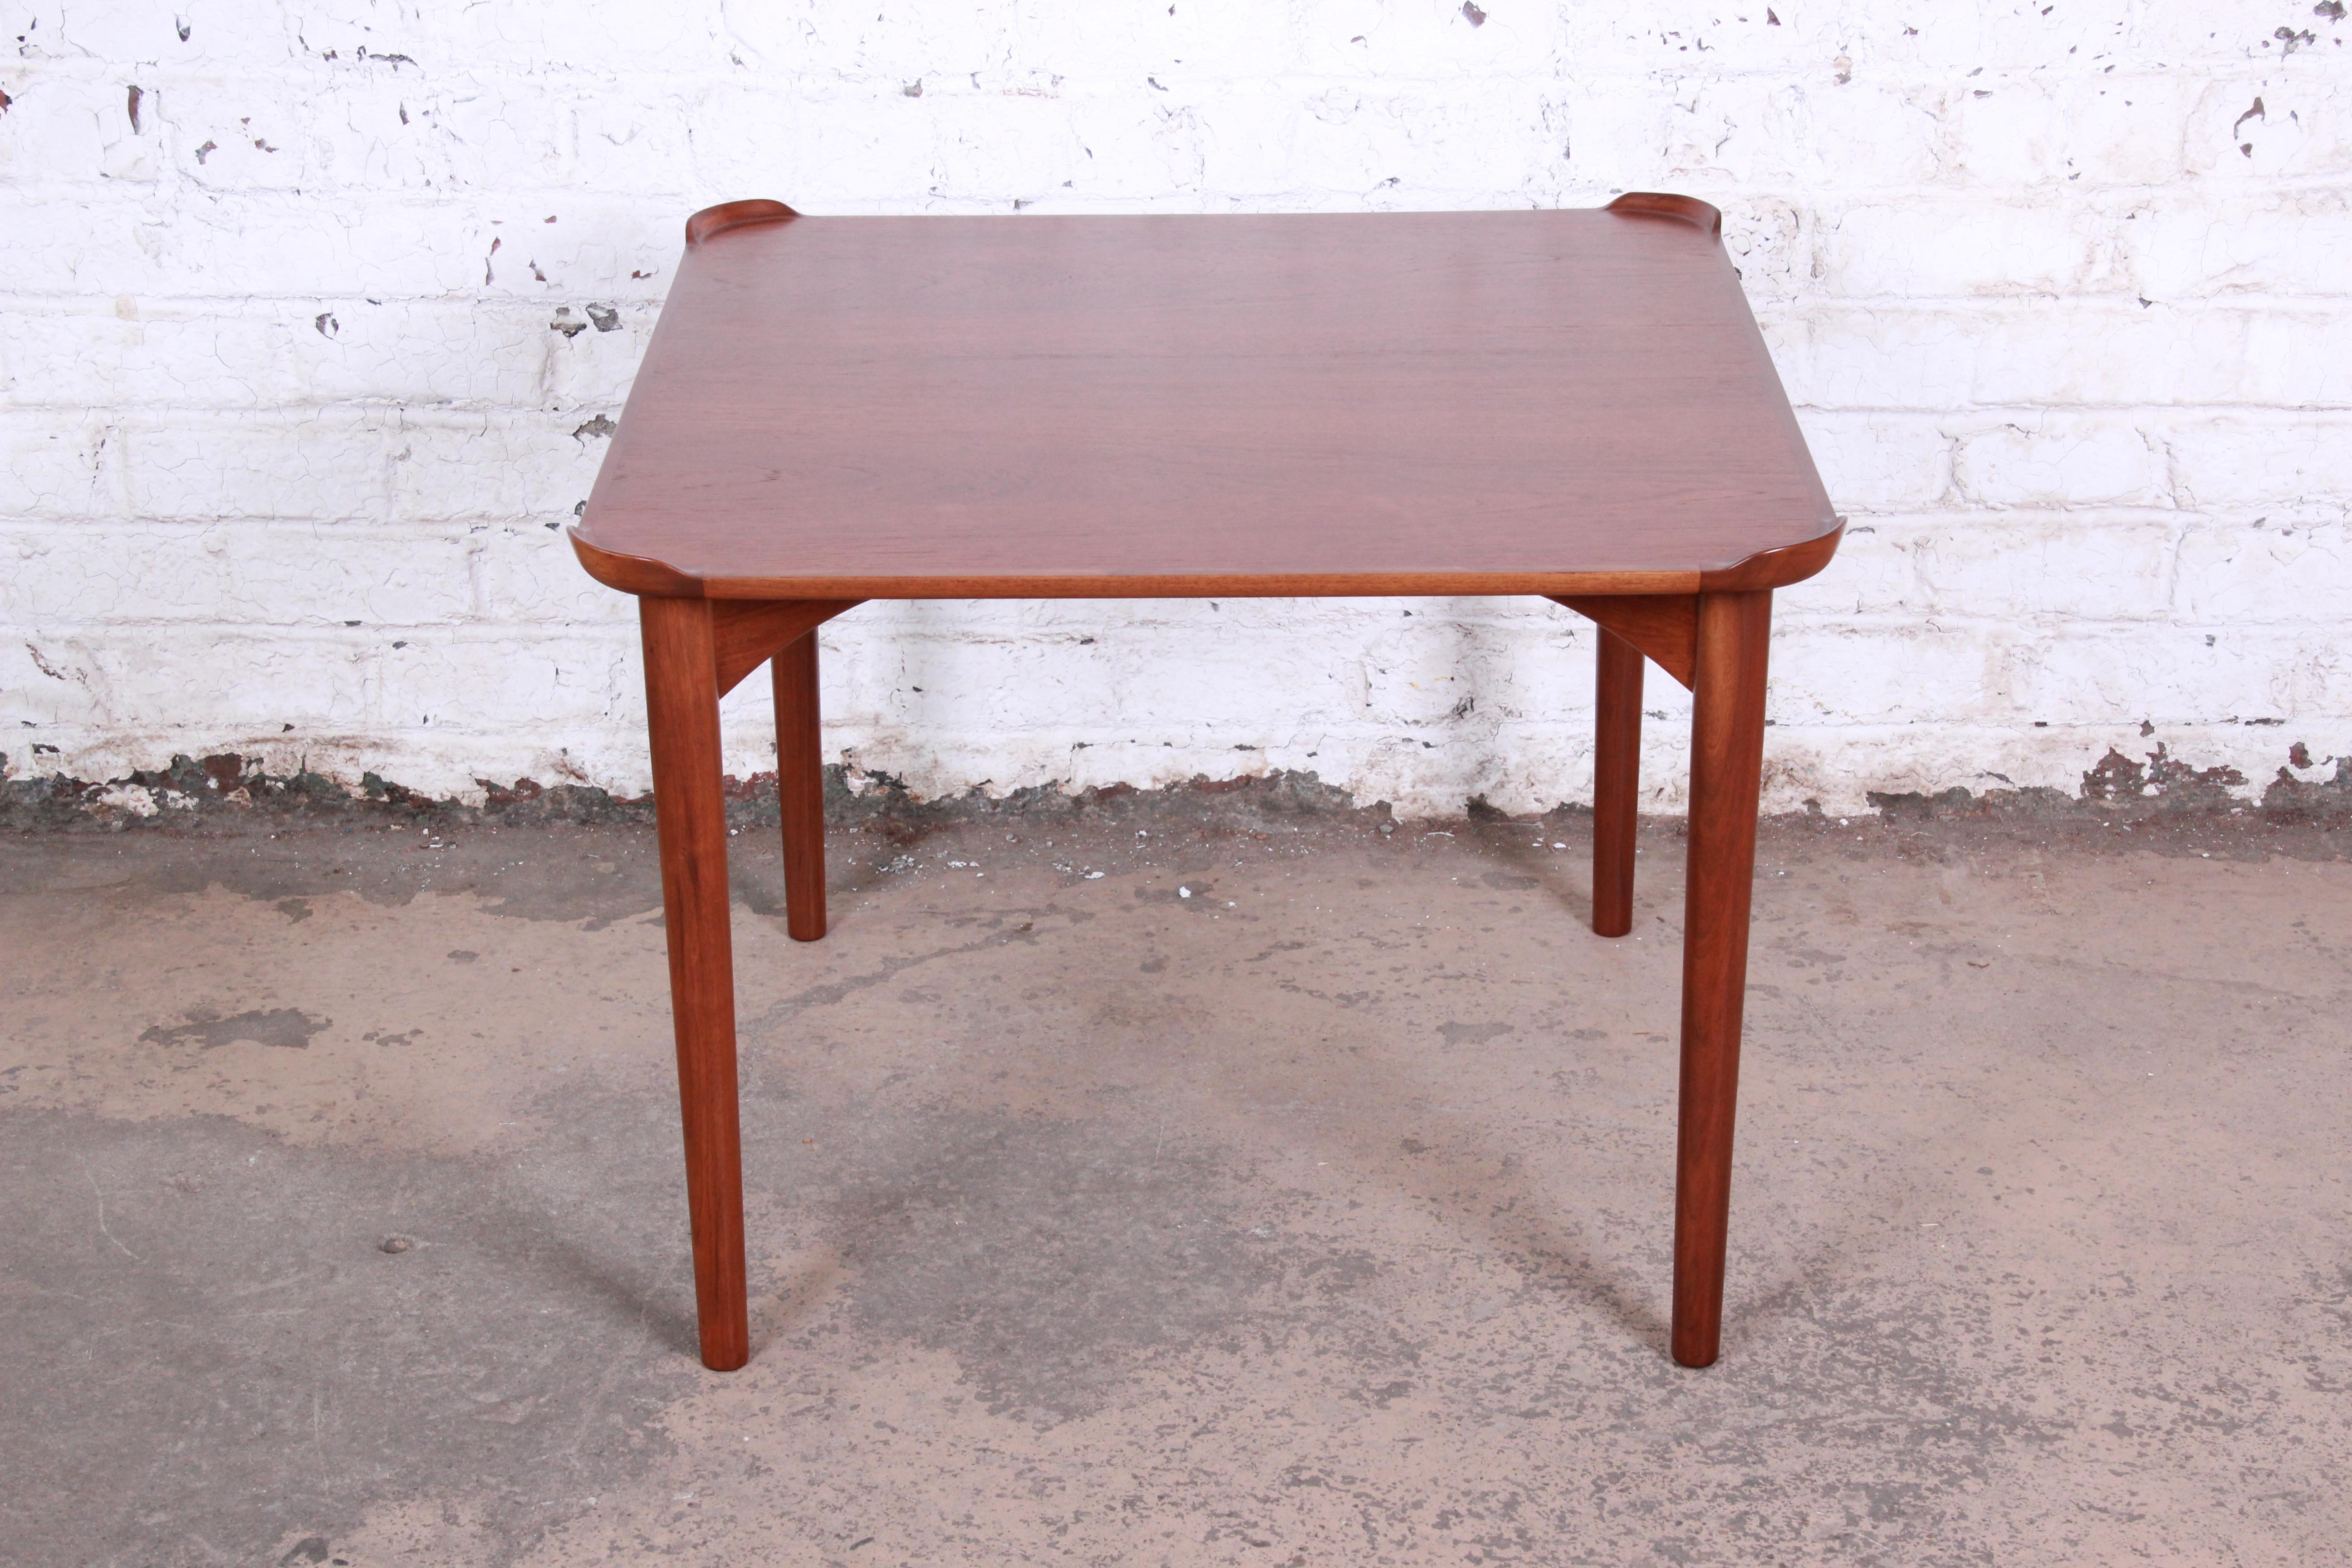 Une belle table de jeu en teck conçue par l'architecte danois Finn Juhls pour Baker Furniture. La table présente un superbe grain de bois de teck et des dosserets de boissons d'angle uniques et sculptés. Le design moderne danois minimaliste du